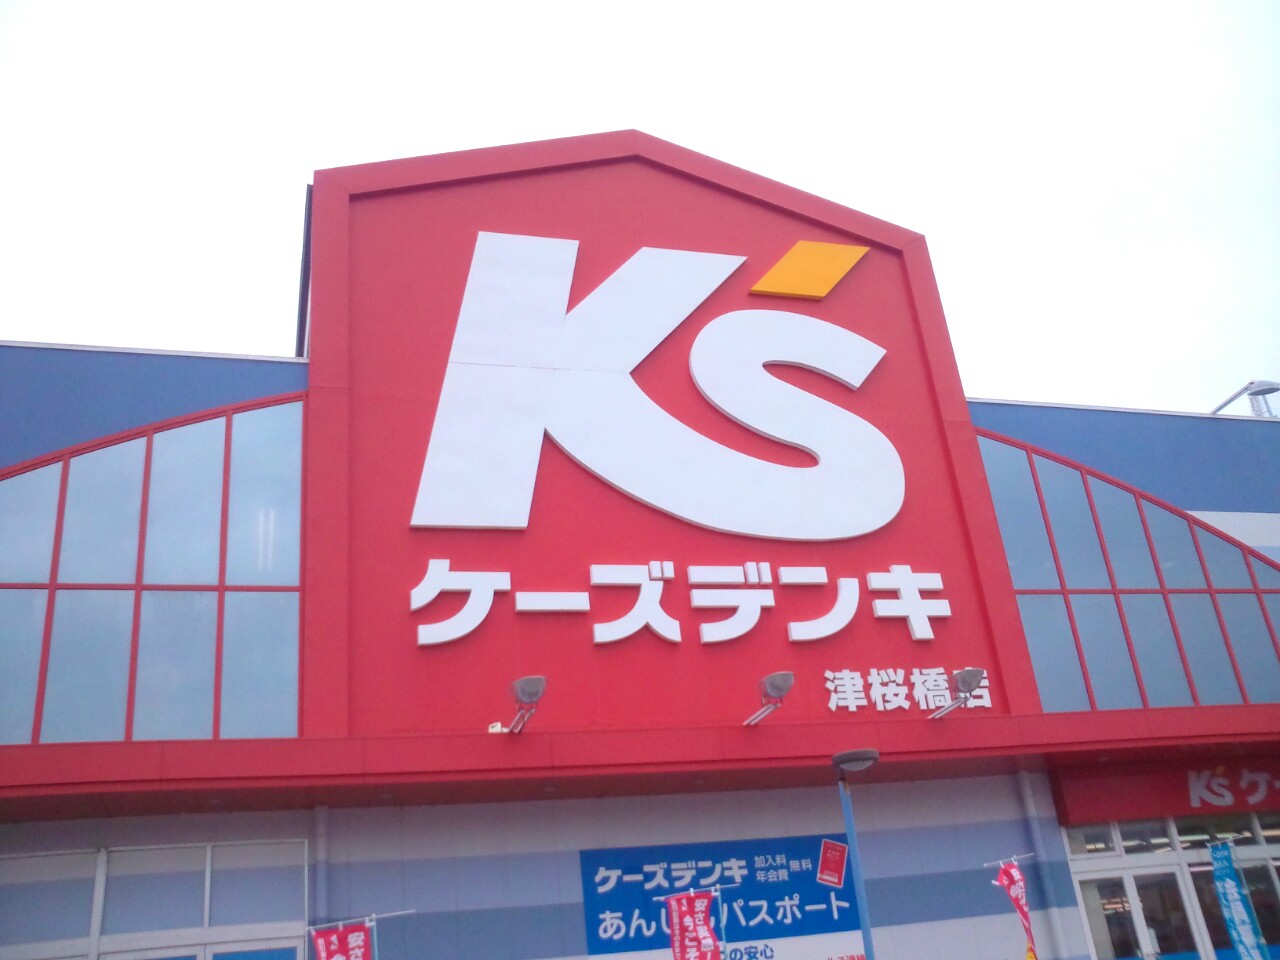 Home center. K's Denki Tsu Sakurabashi store up (home improvement) 1485m